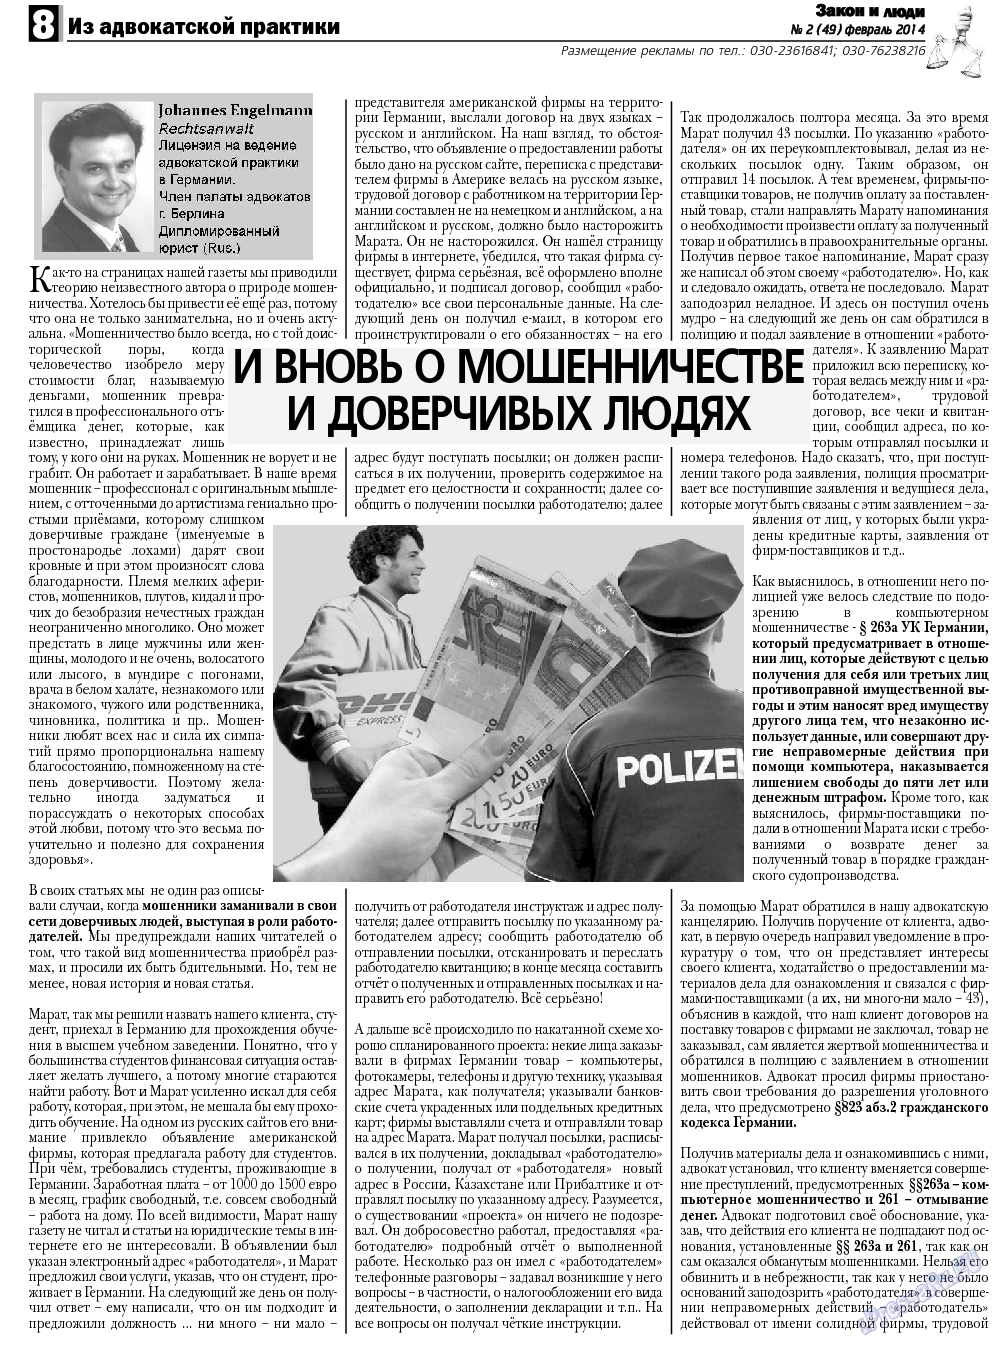 Закон и люди, газета. 2014 №2 стр.8